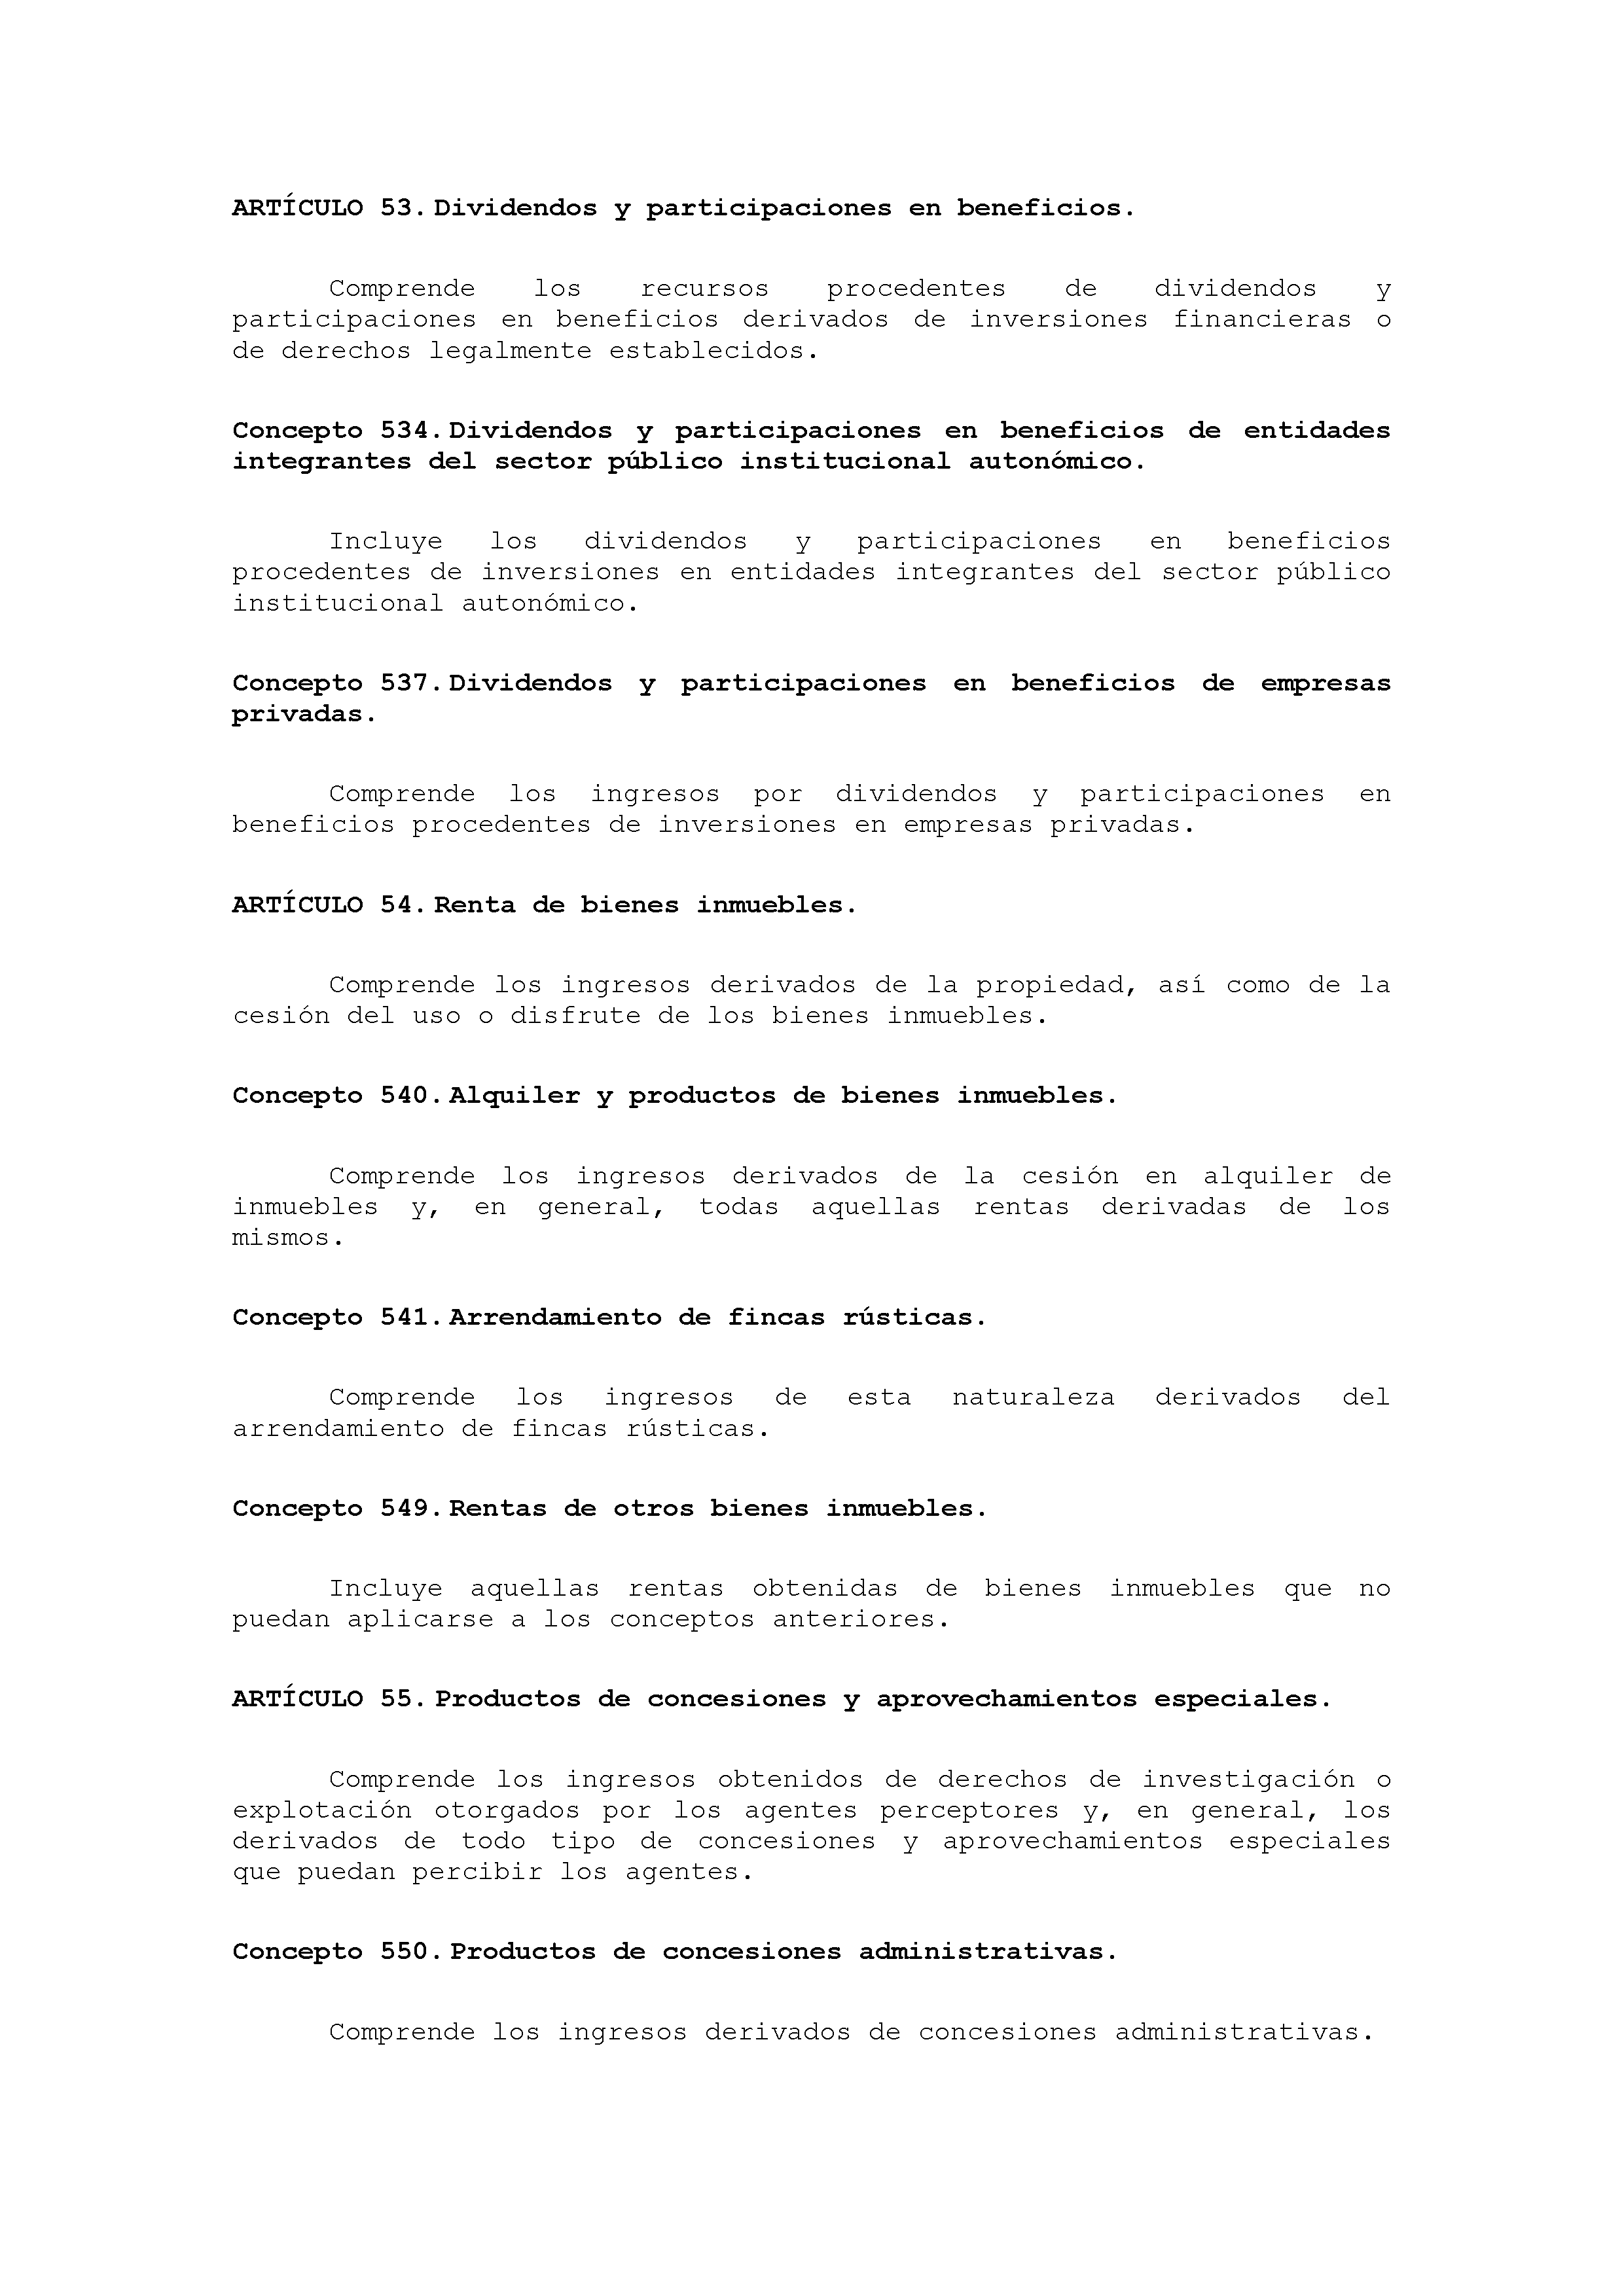 ANEXO VIII CÓDIGO DE LA CLASIFICACIÓN ECONÓMICA DE LOS INGRESOS PÚBLICOS Pag 17